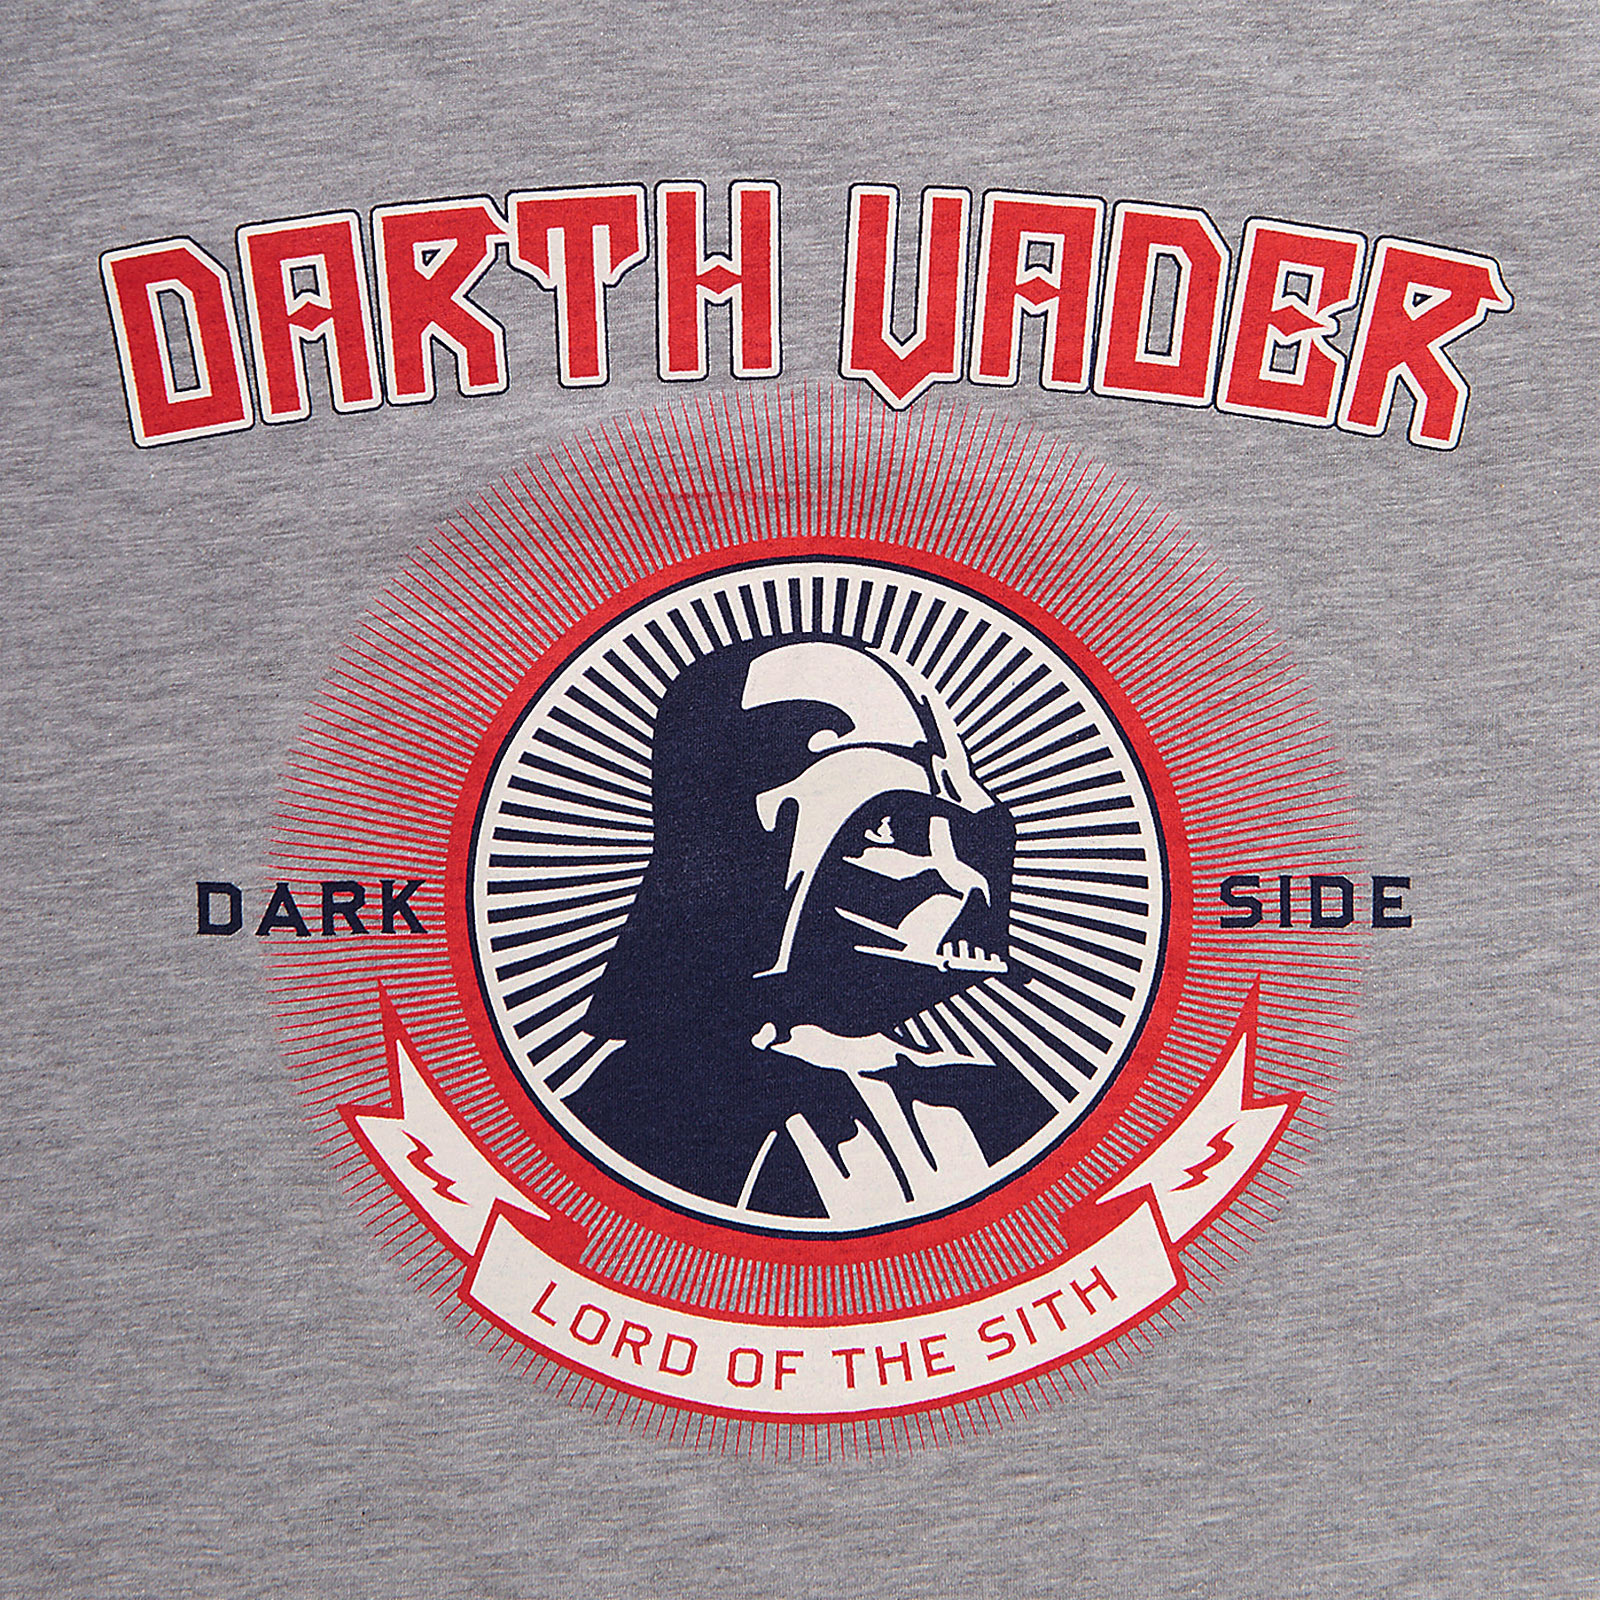 Star Wars - Darth Vader Lord of the Sith T-Shirt grey